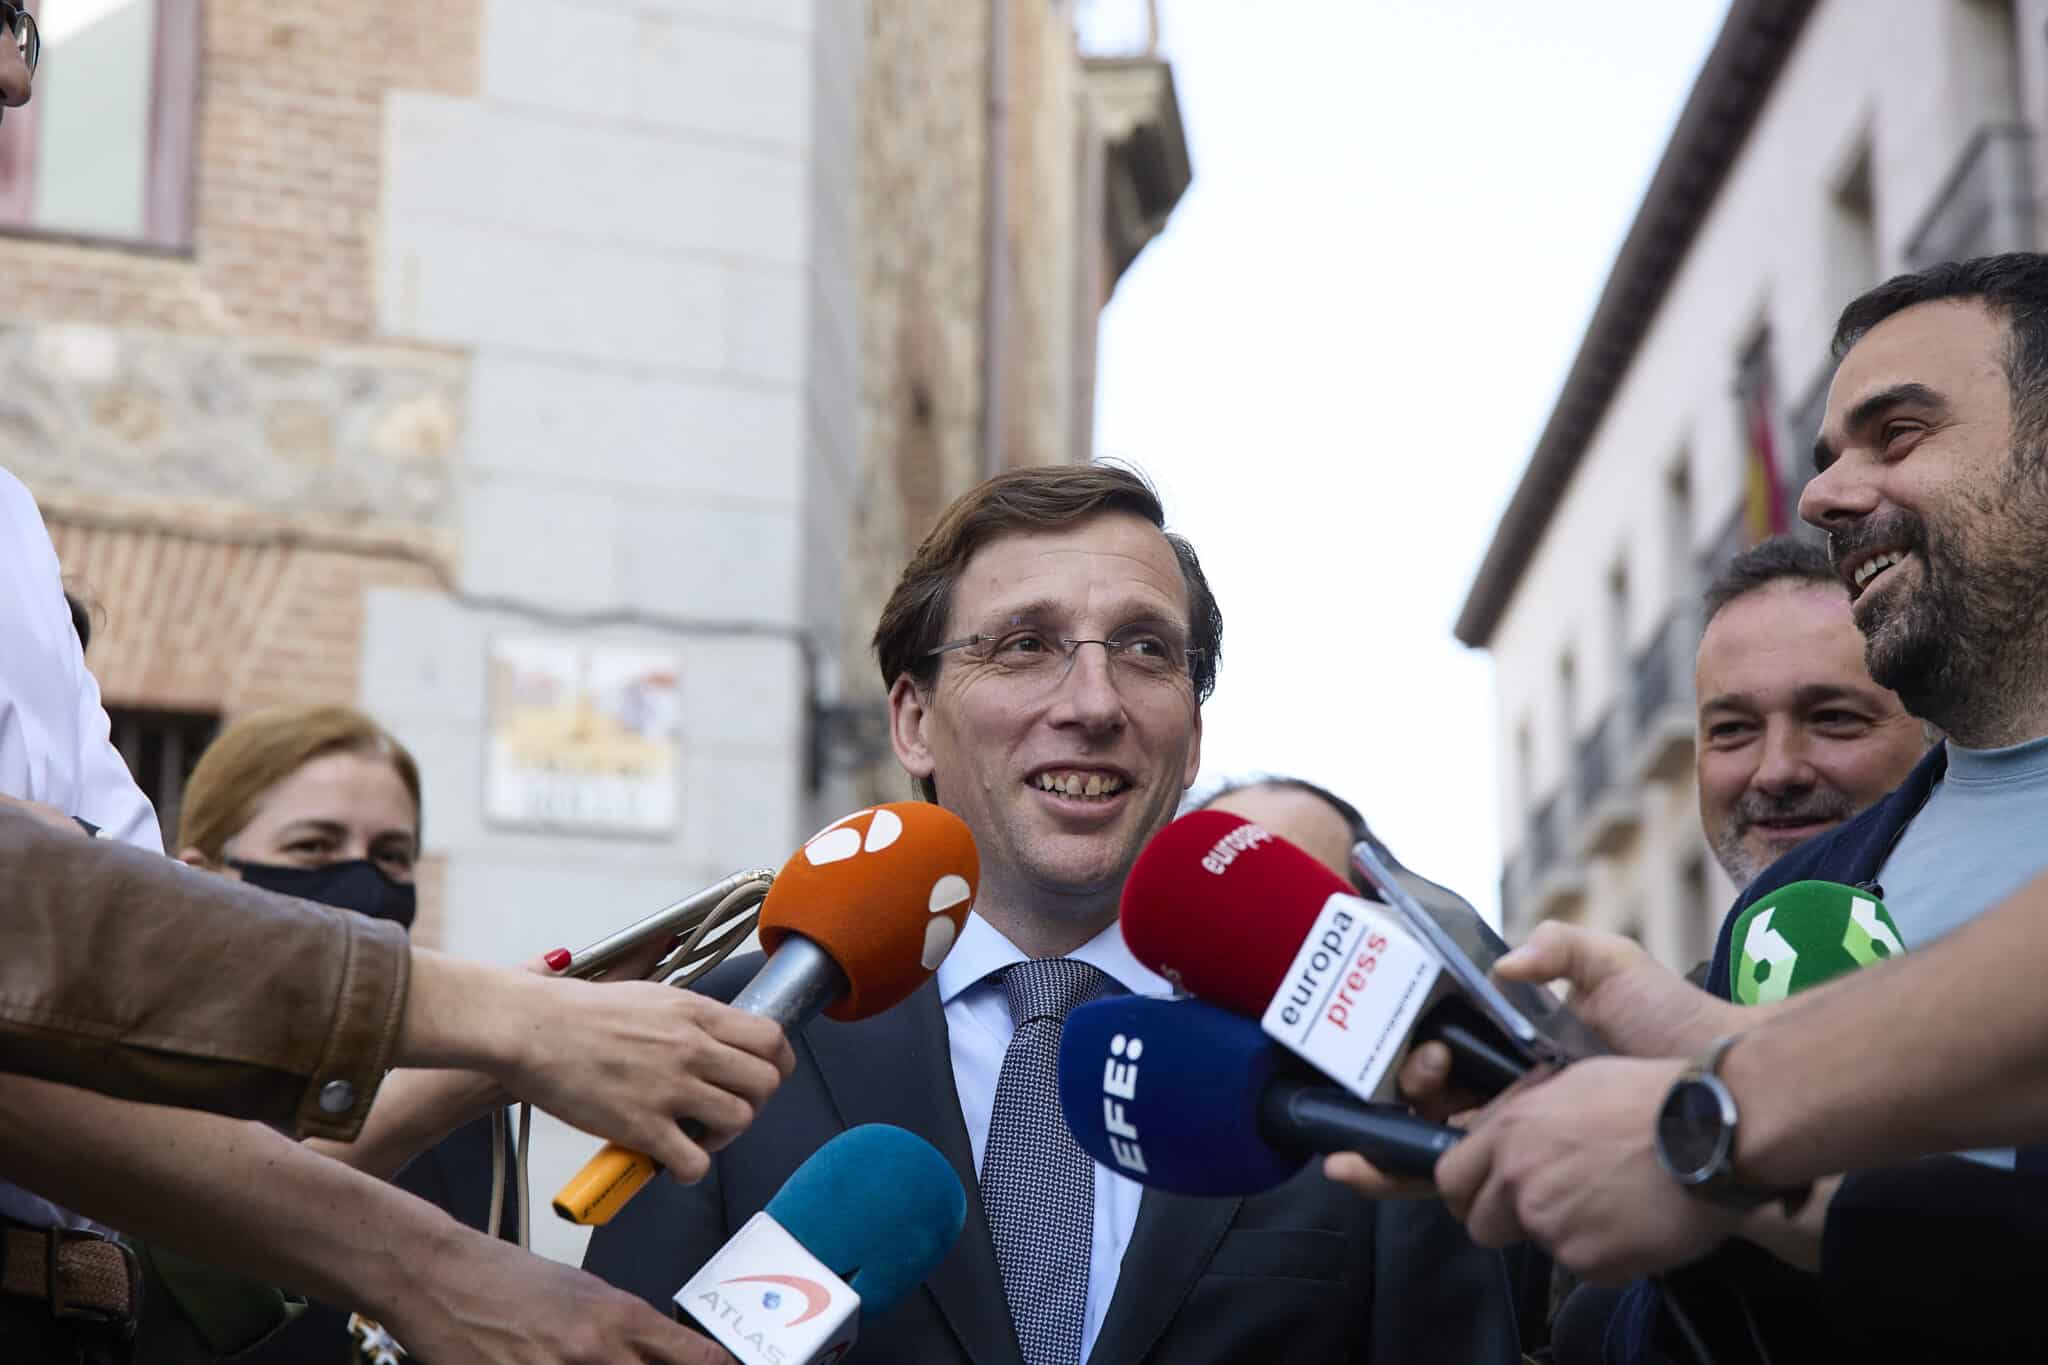 Almeida ganaría en Madrid pero necesitaría a Vox y Ciudadanos para gobernar